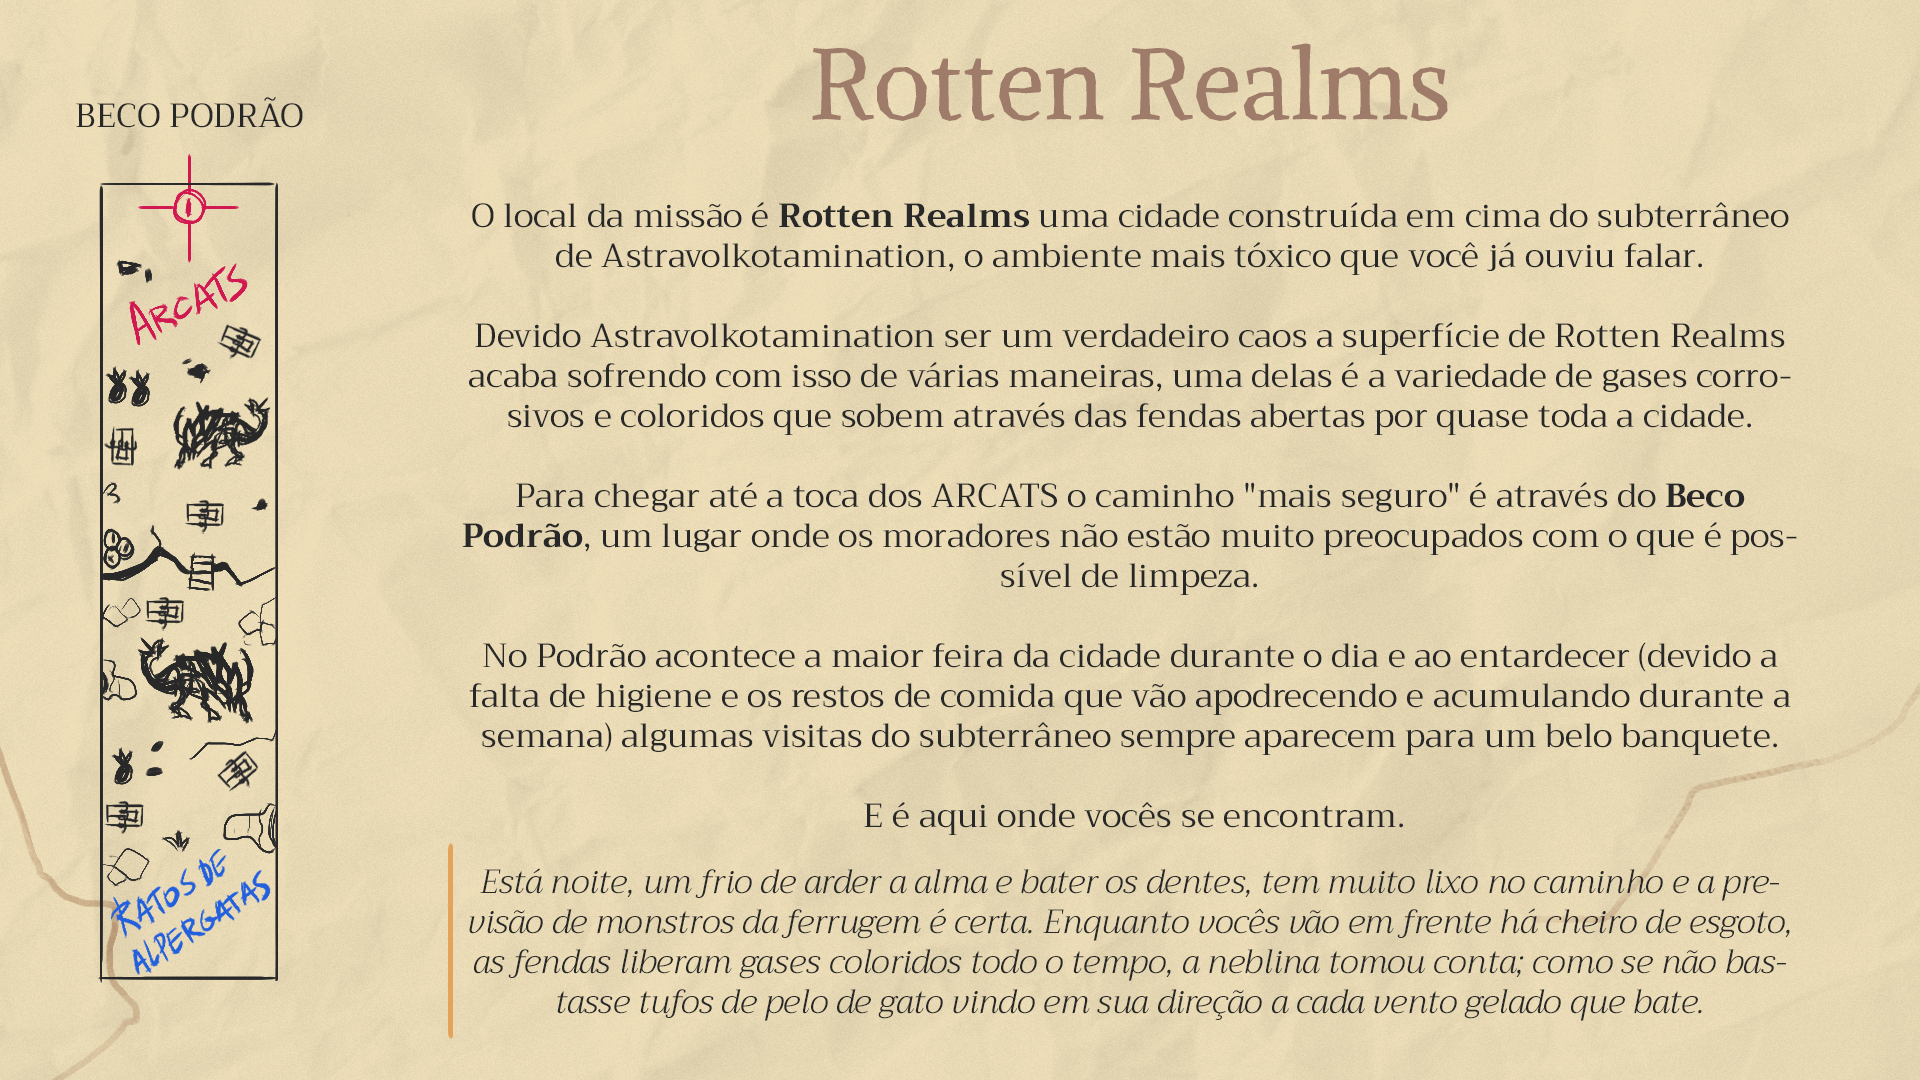 Imagem mostrando uma página envelhecida tipo de livros antigos explicando um pouco sobre o ambiente da cidade de Rotten Realms e o beco podrão